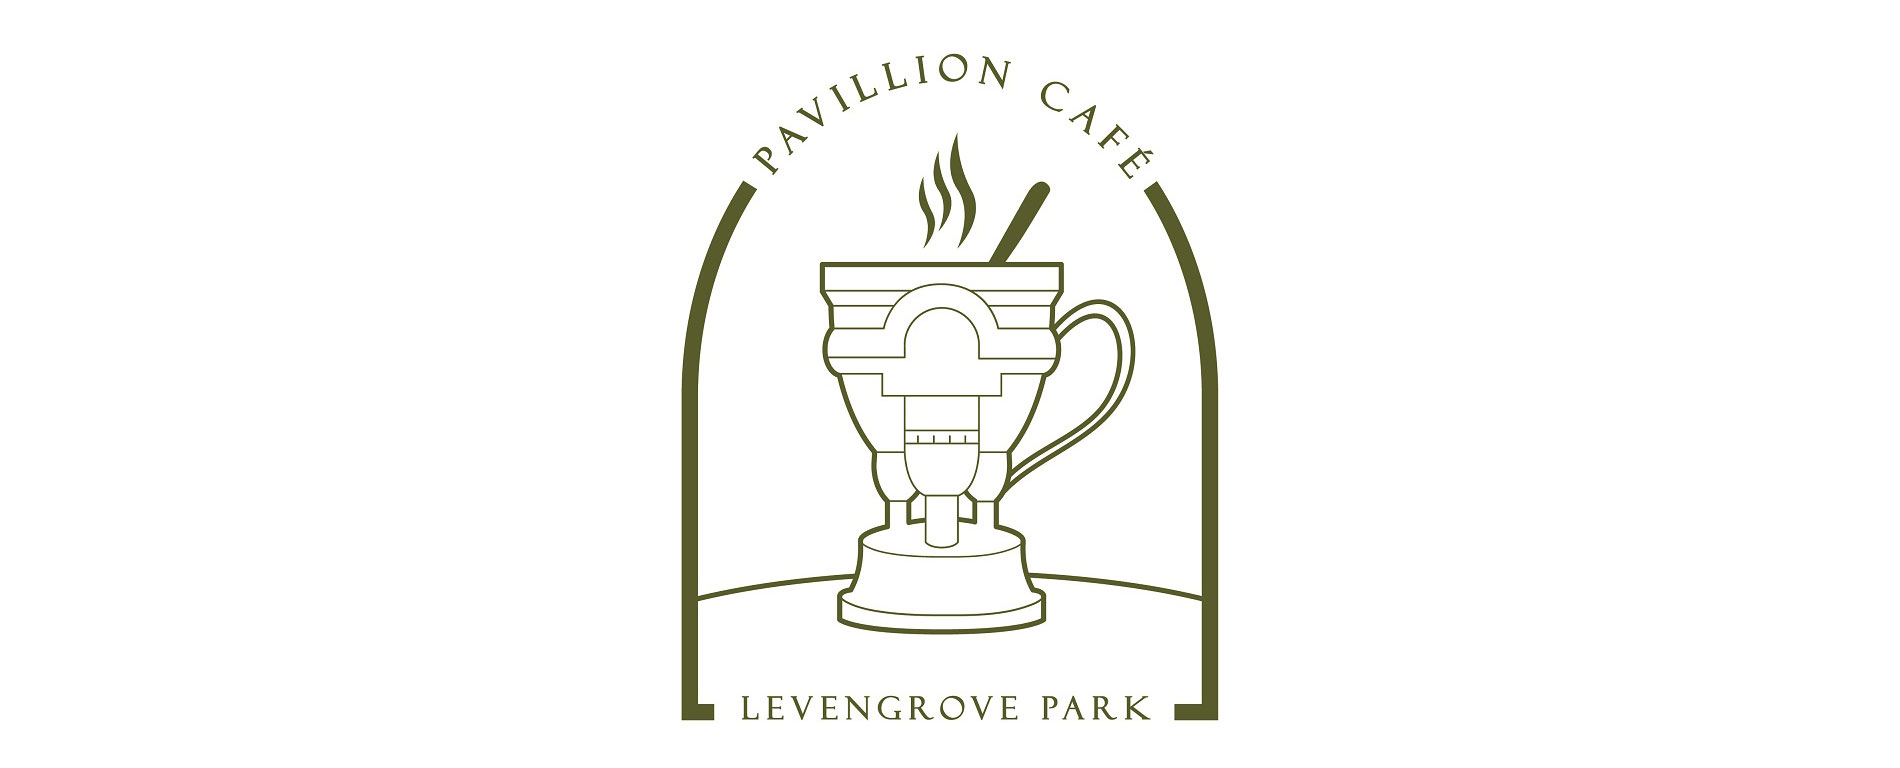 The Pavillion Cafe, Levengrove Park